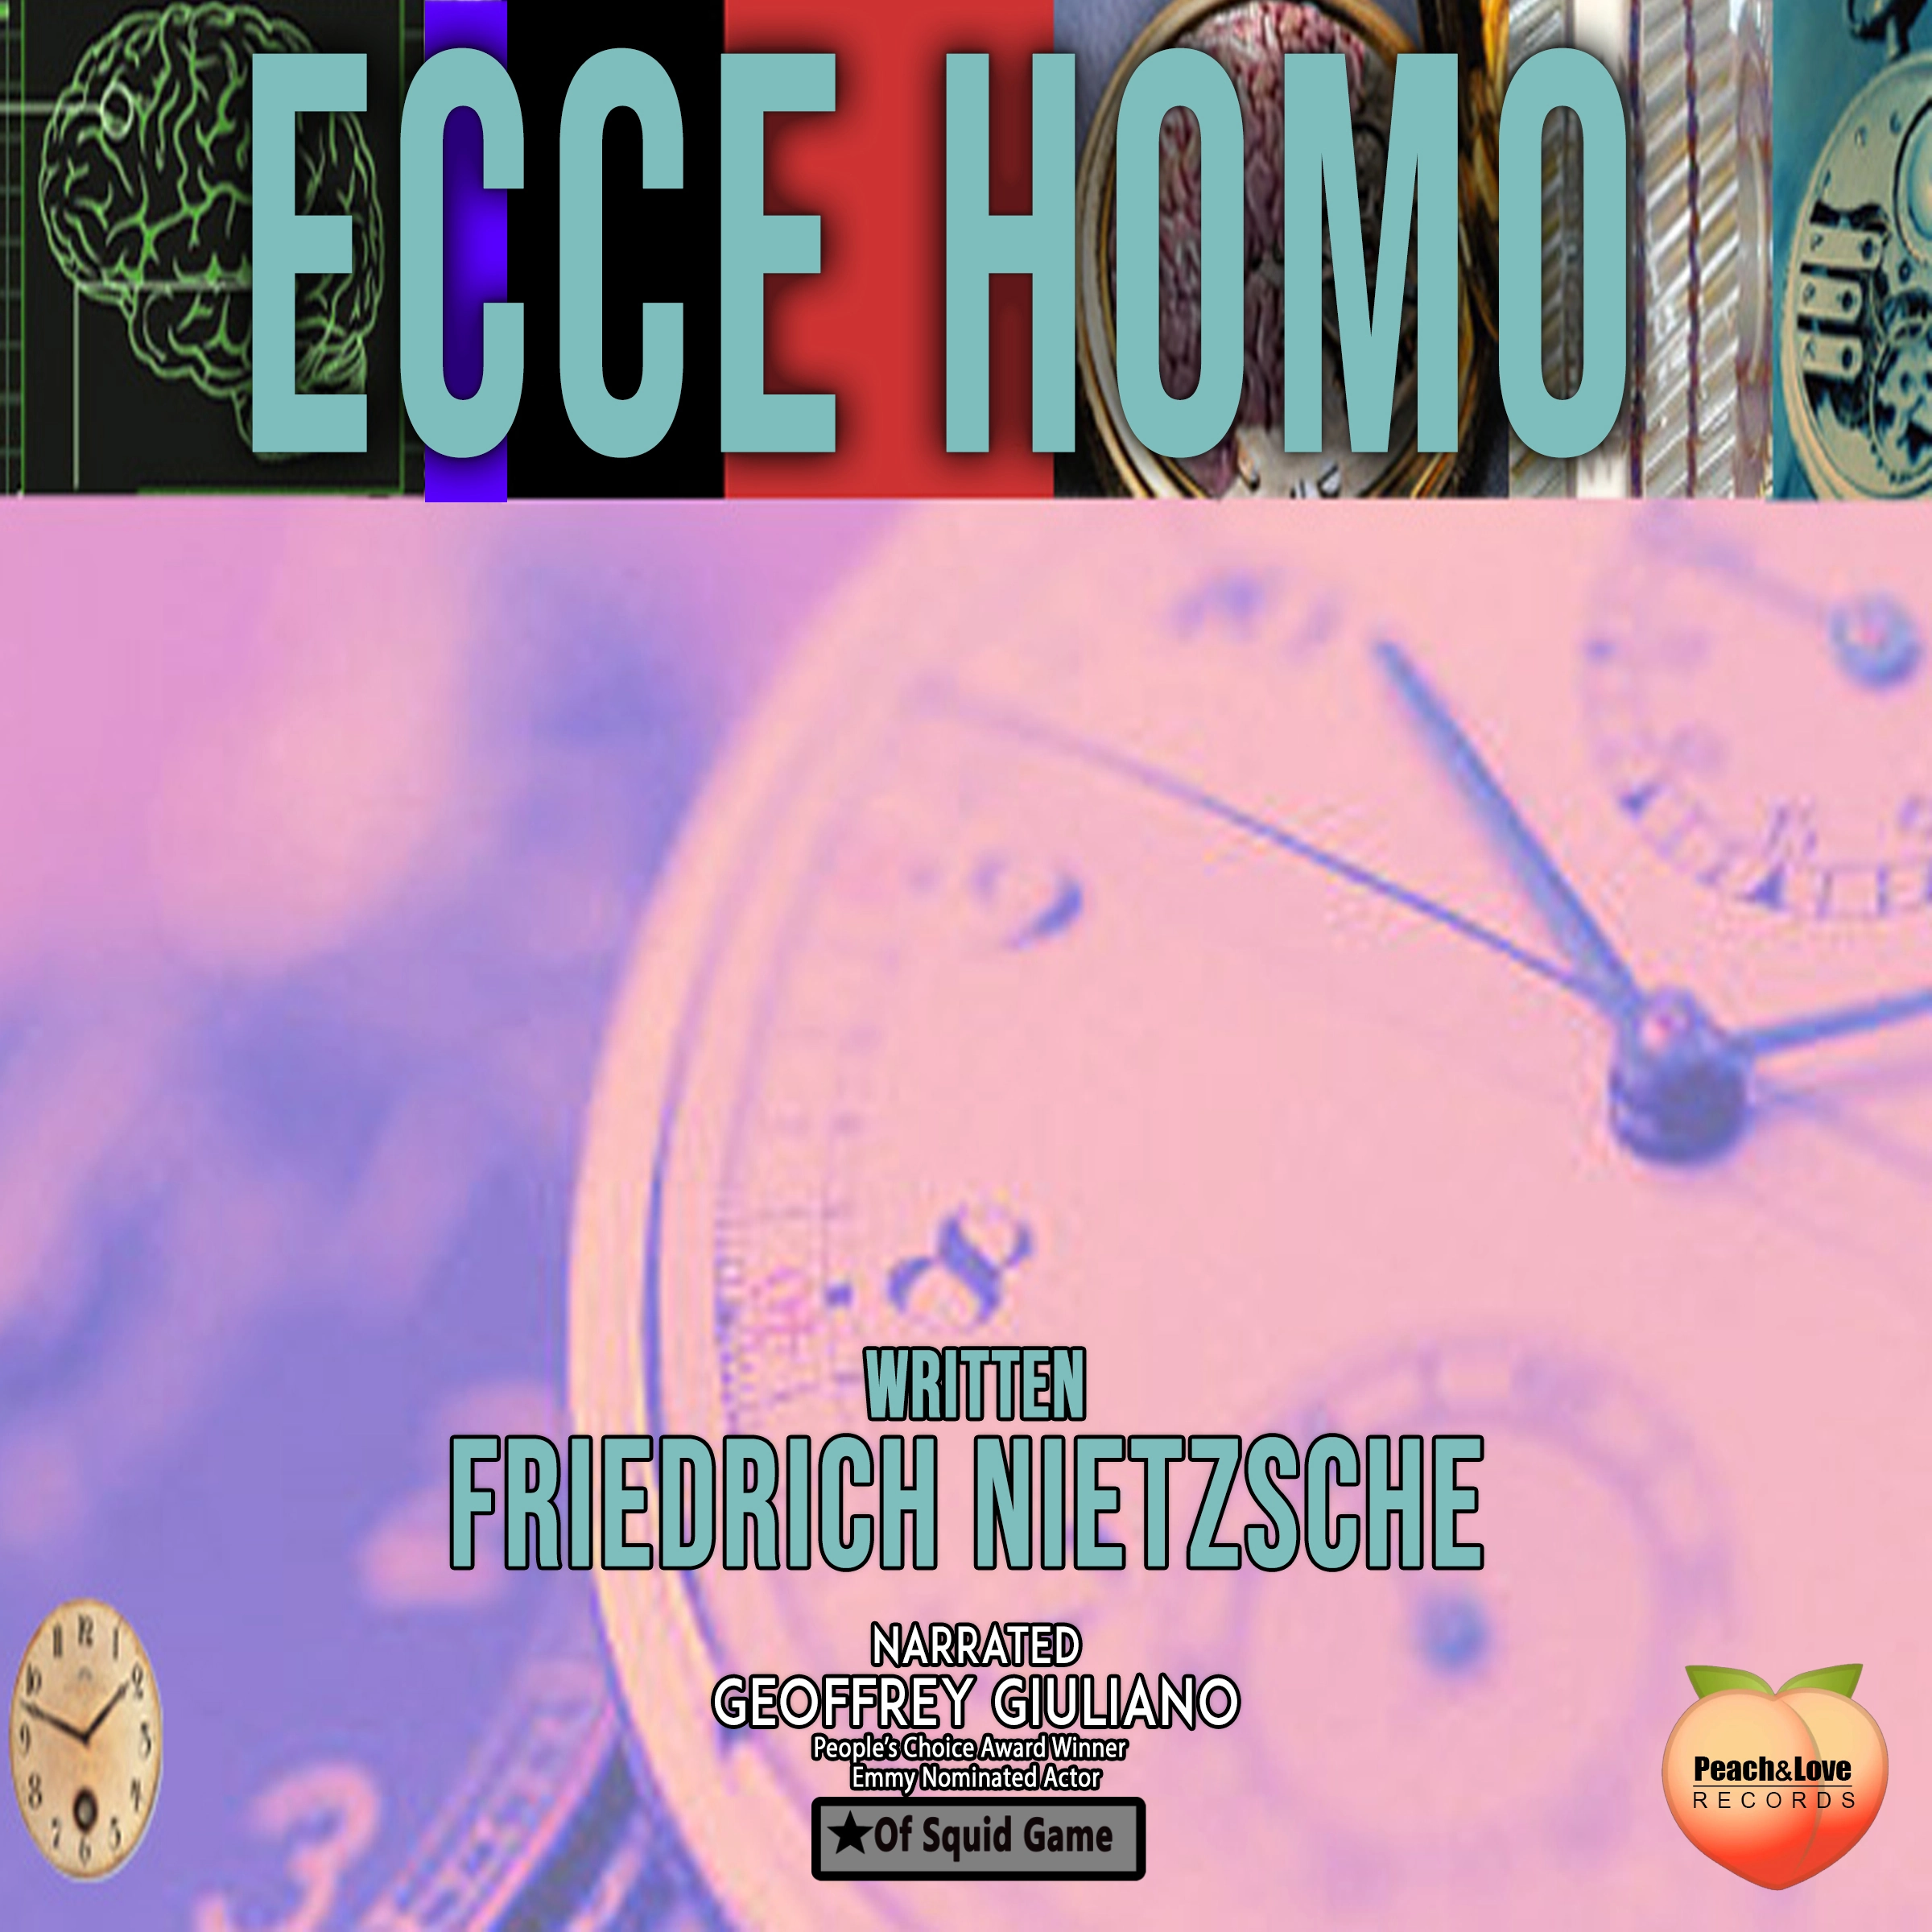 Ecce Homo Audiobook by Friedrich Nietzsche